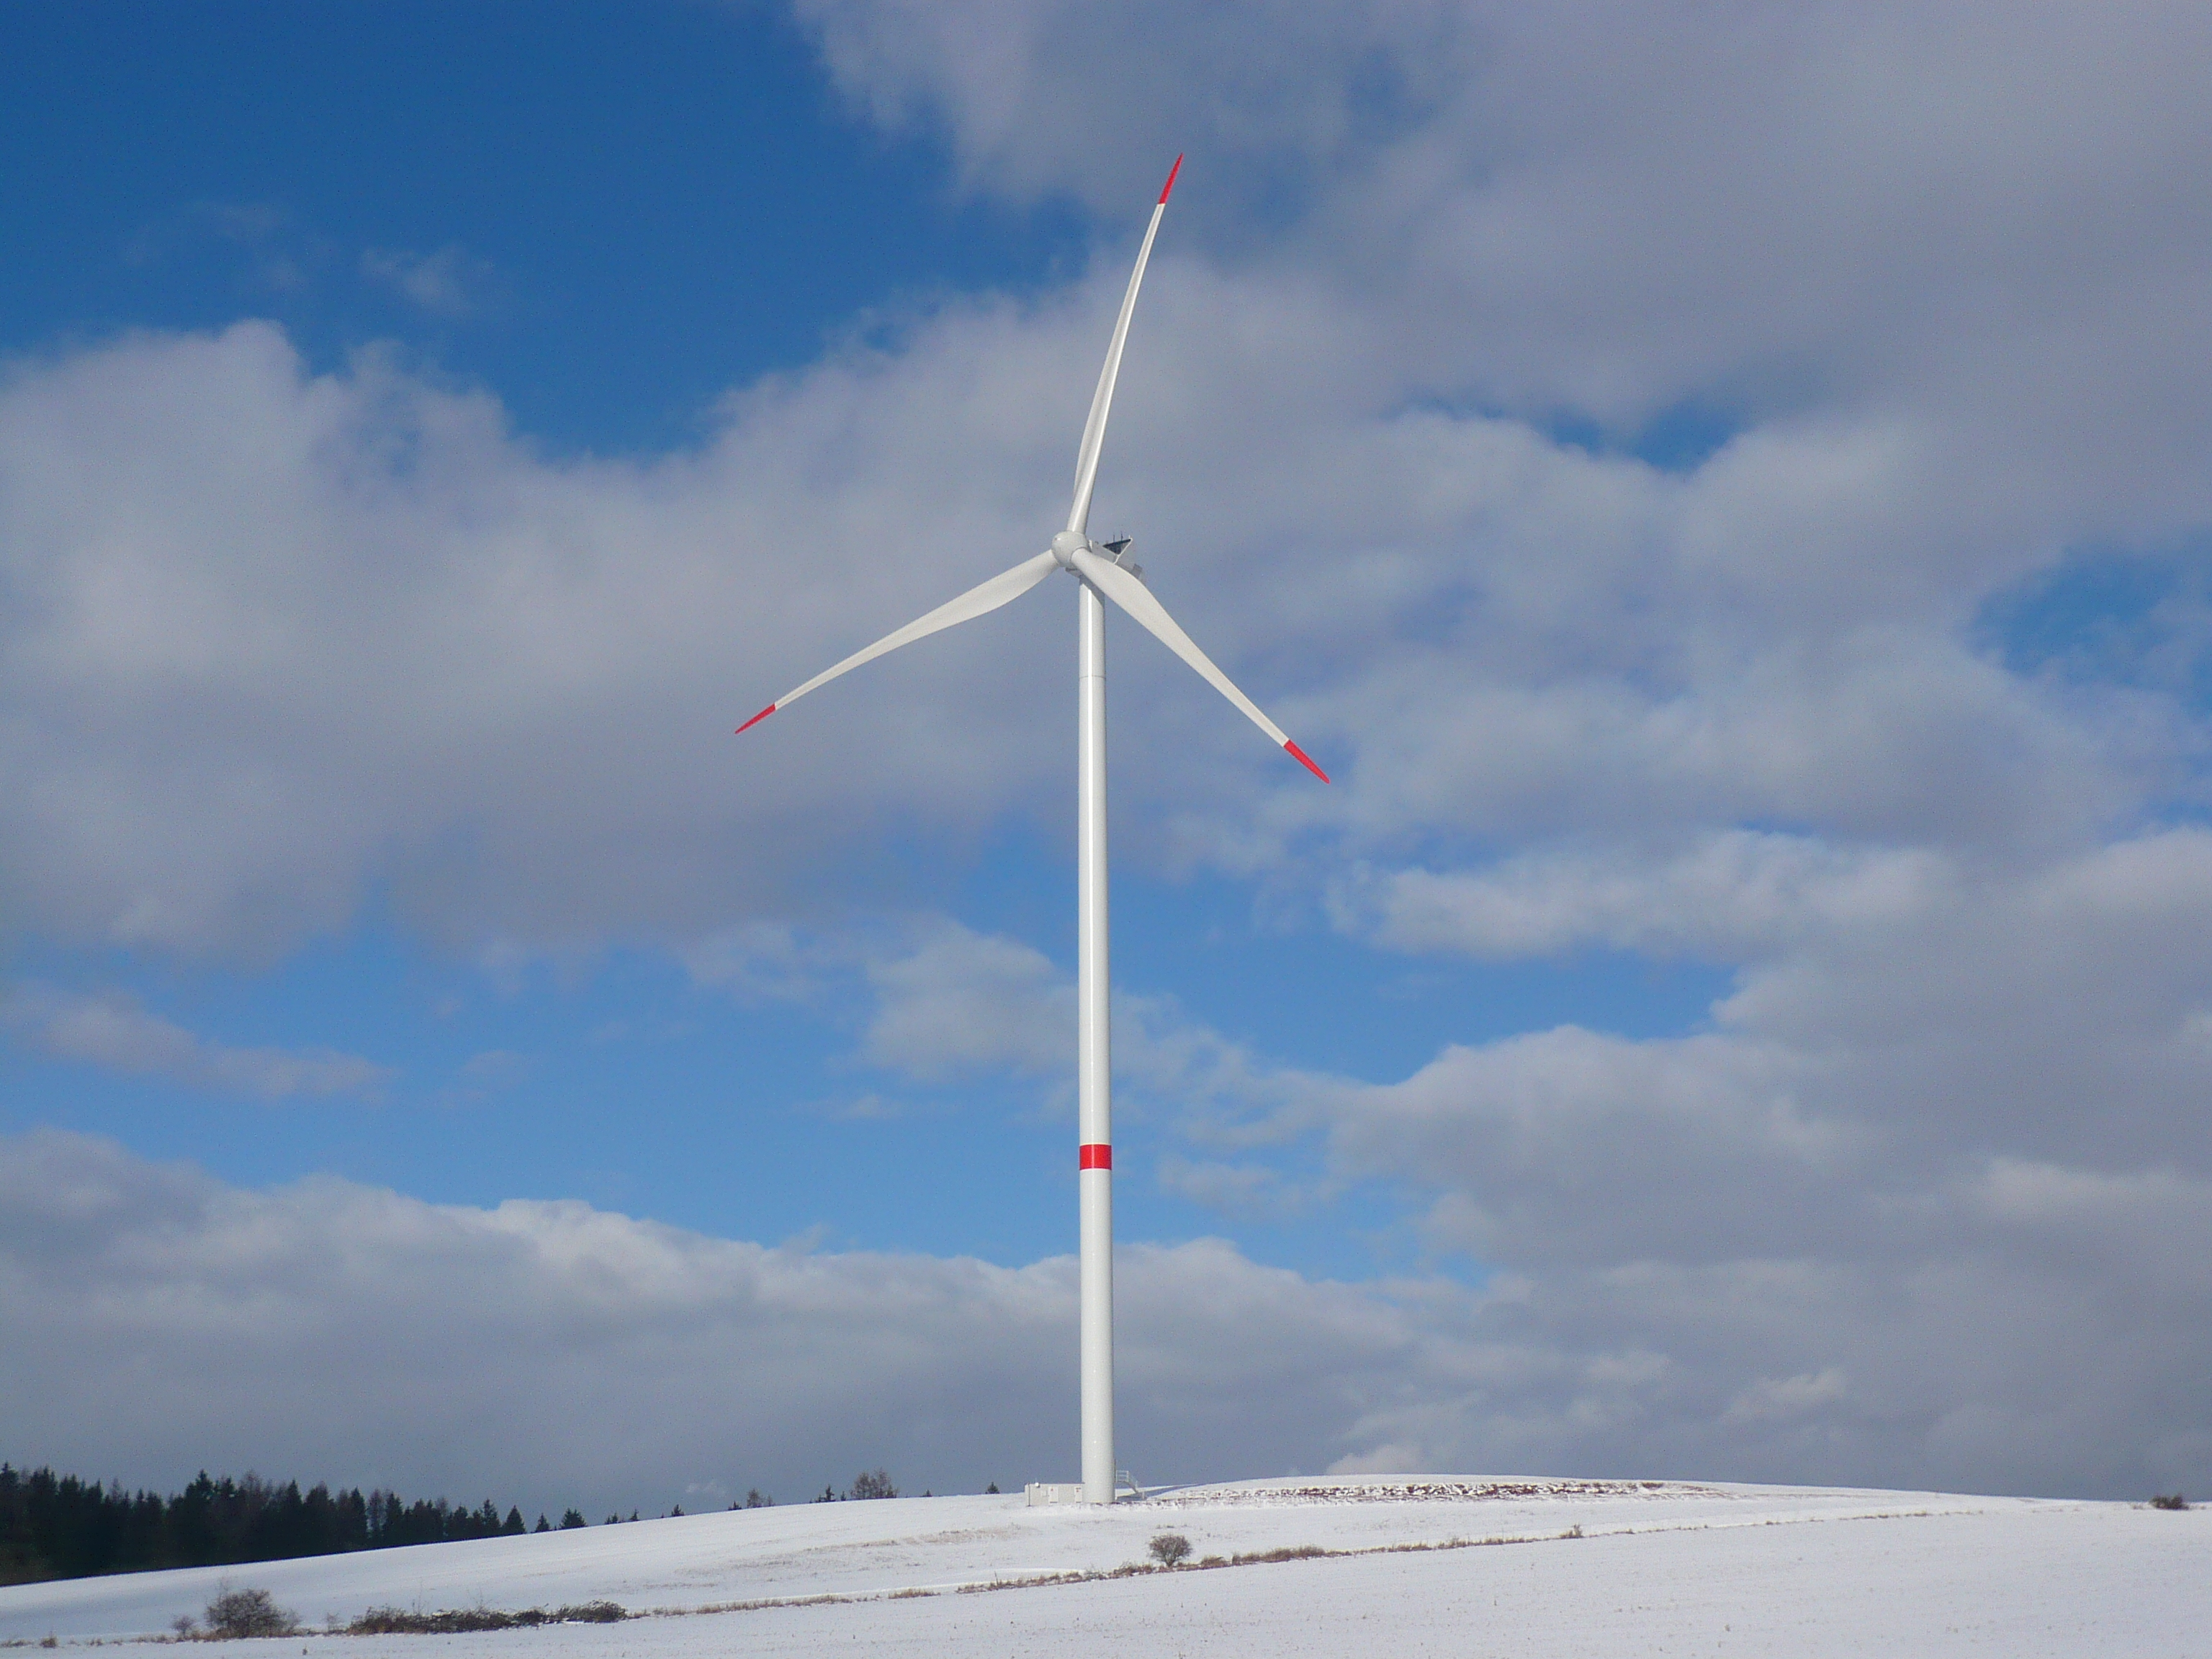 Větrné elektrárny pokrývají 16 % spotřeby elektřiny v EU. V Česku ale pouze 1 %. Přitom větrný potenciál máme podobně dobrý jako sousední Rakousko nebo jižní Německo. Zdroj Česká společnost pro větrnou energii